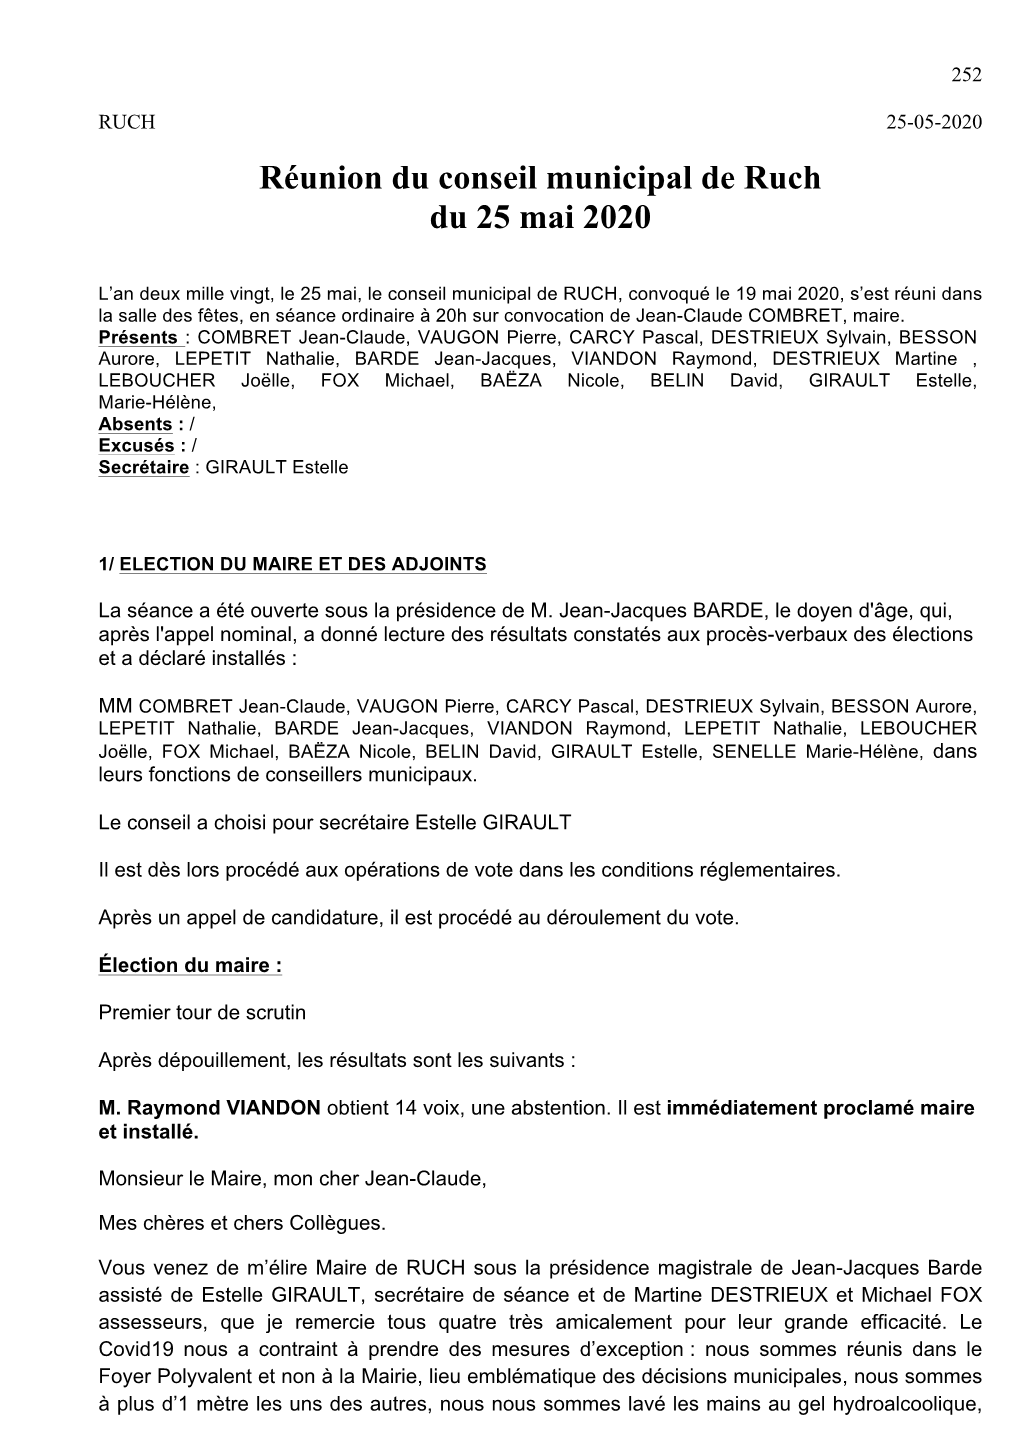 Réunion Du Conseil Municipal De Ruch Du 25 Mai 2020